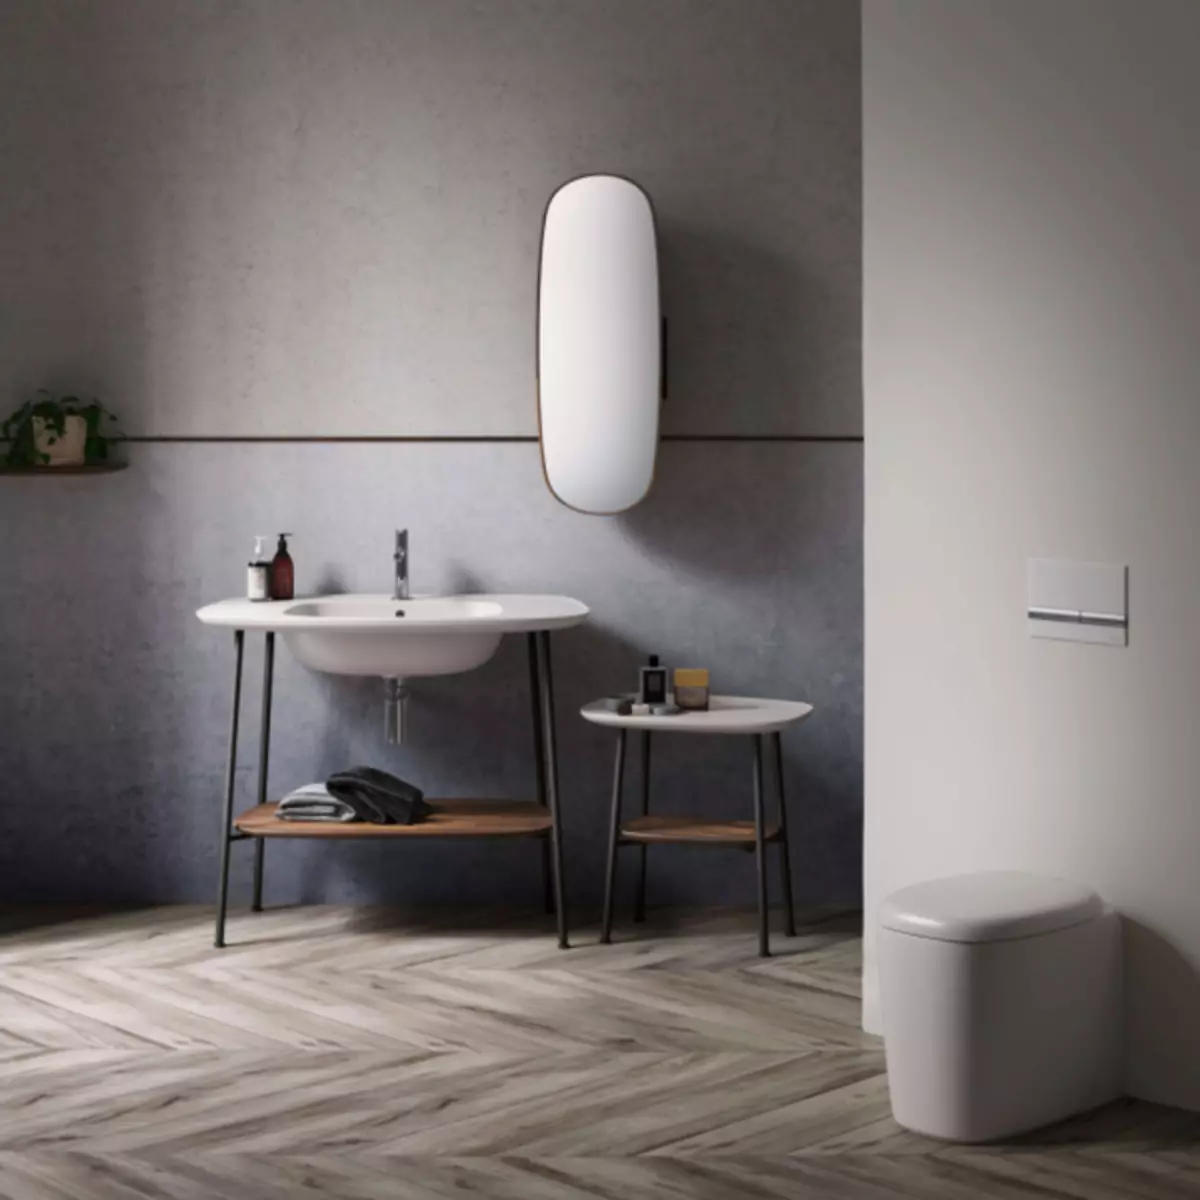 Nuwe loodgieterswerk - 2019: kraan, wasbakke en toilette van wonderlike ontwerp